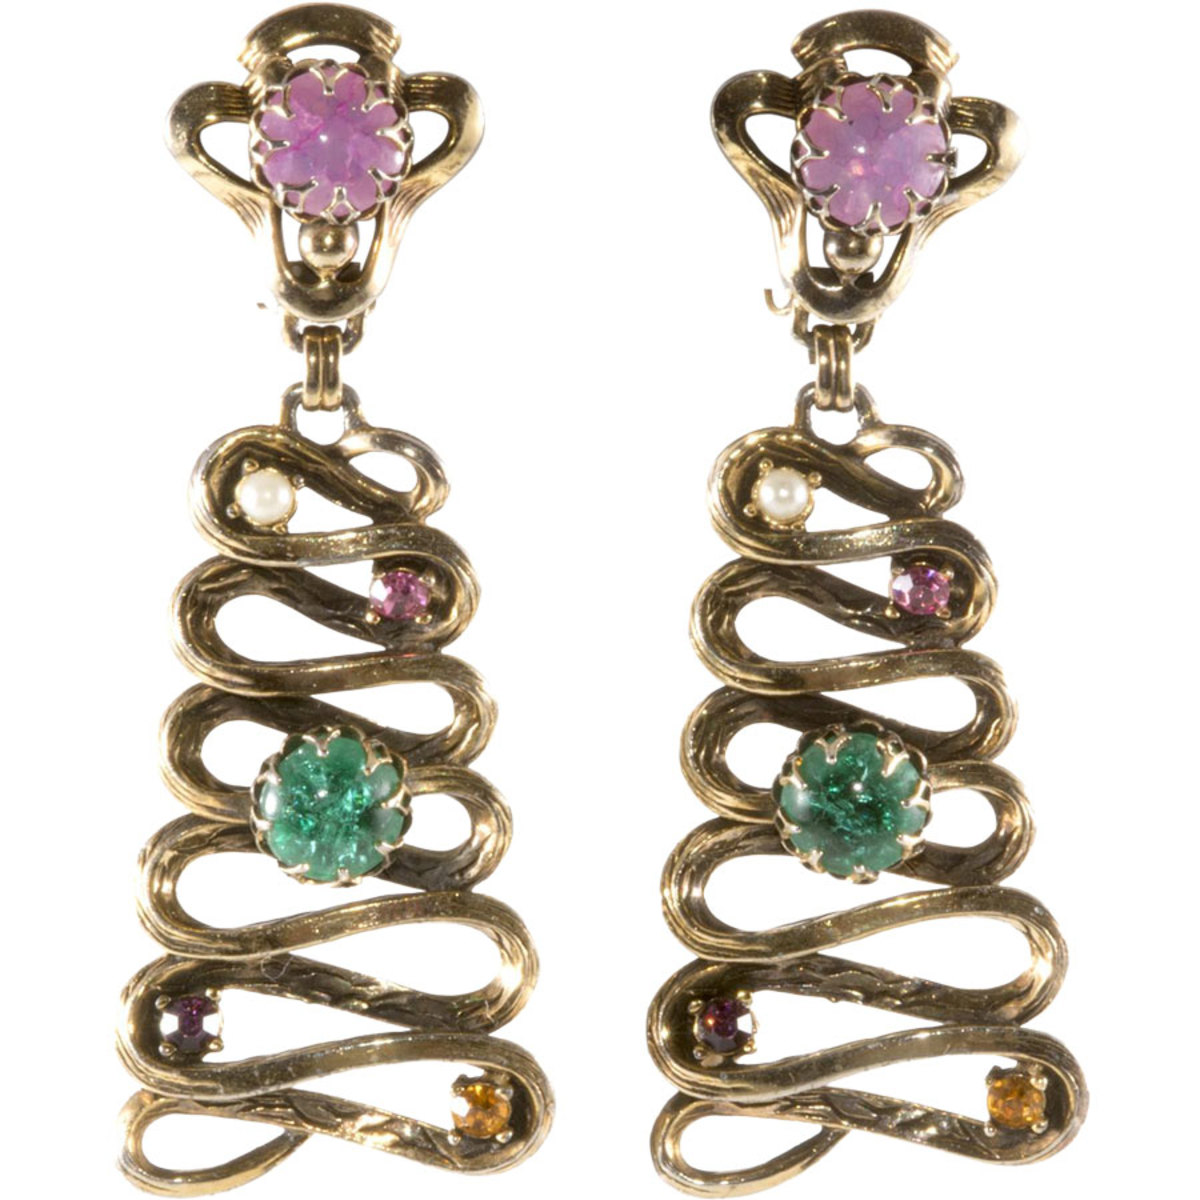 Schiaparelli  dangle earrings,  1950s,  $125-$175.